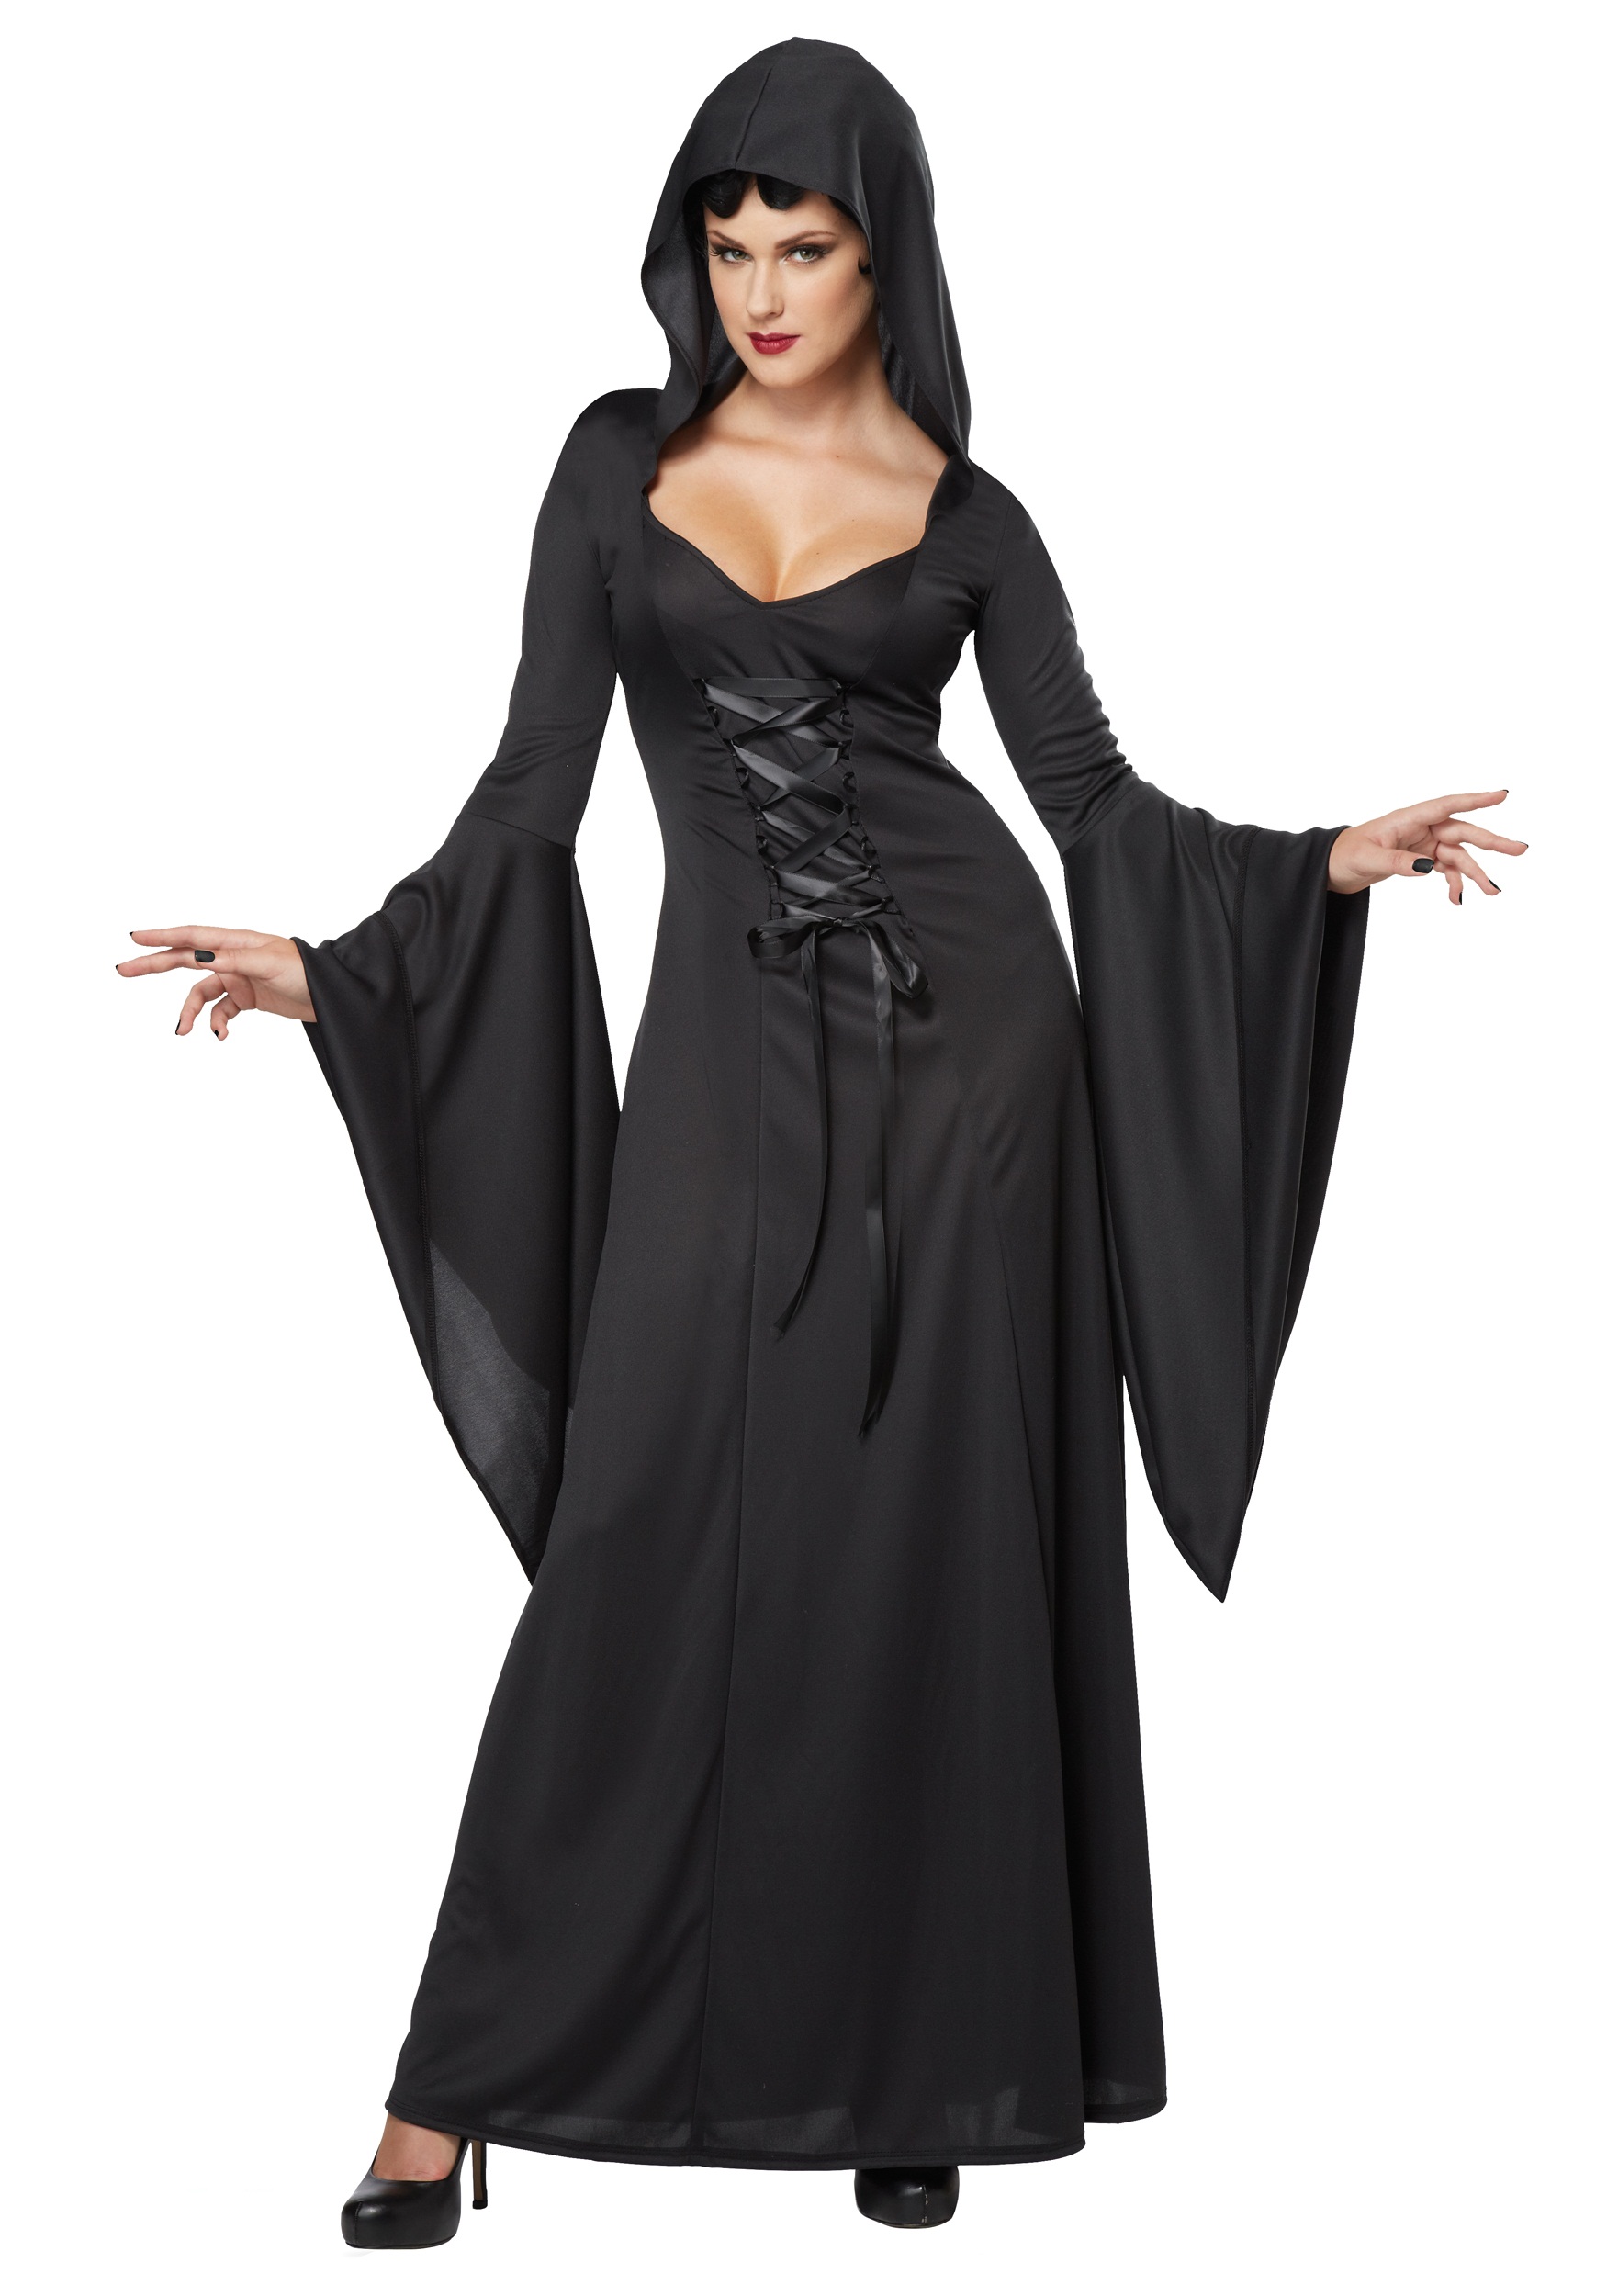 Women's Hooded Black Lace Up Robe Fancy Dress Costume